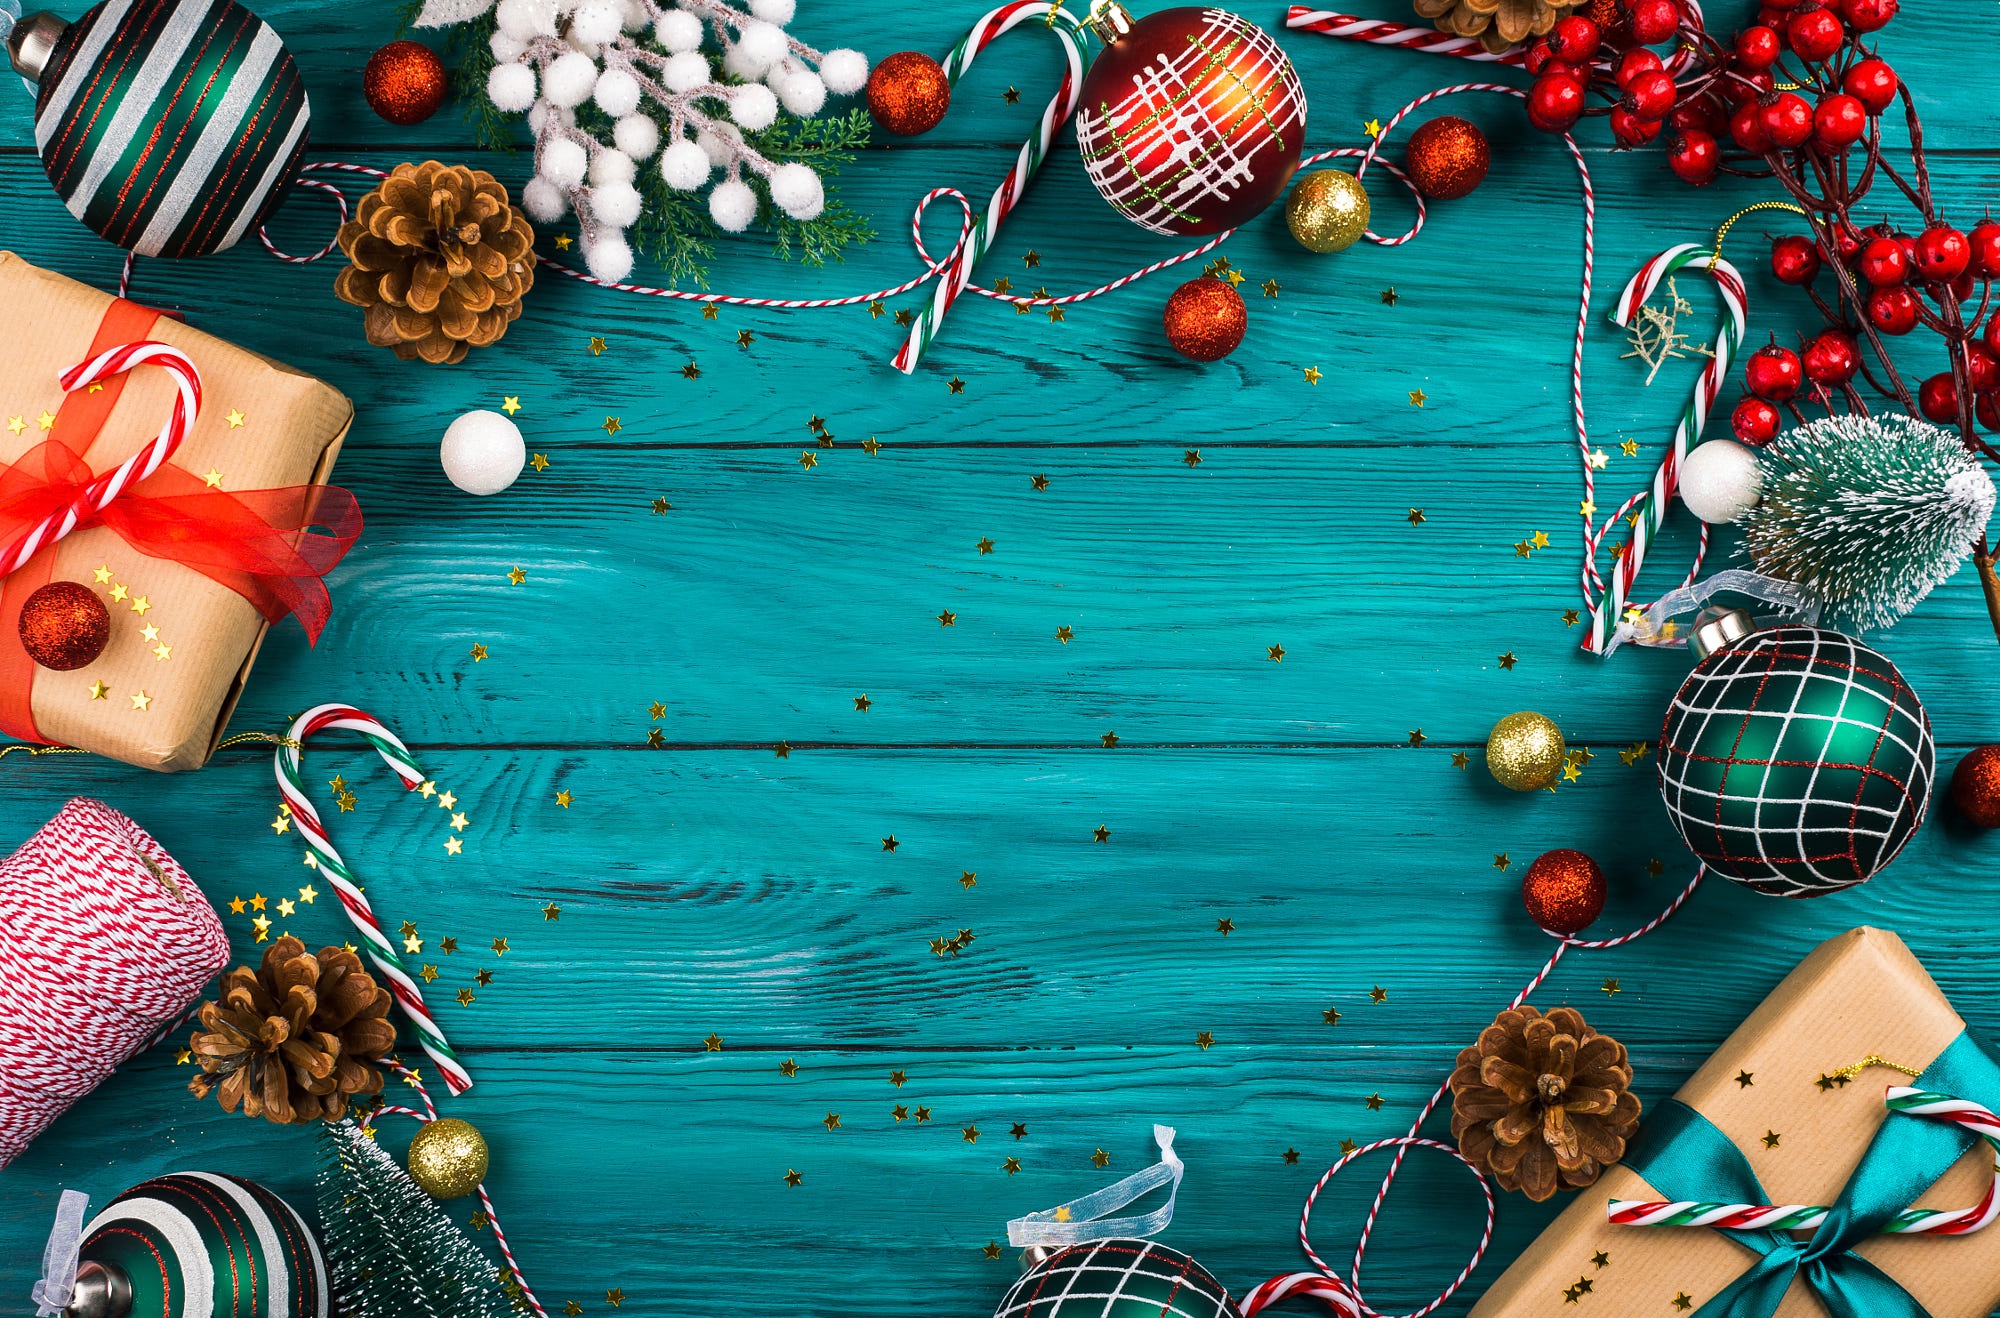 Hình nền Giáng sinh sẽ mang đến cho bạn không khí lễ hội ấm áp, đầy không khí hứng khởi của mùa Giáng sinh. Bạn sẽ bị cuốn hút vào hình ảnh vô cùng độc đáo và đẹp mắt, tạo cho chính mình cảm giác như mình đang sống trong một thế giới đầy màu sắc và tuyệt vời.